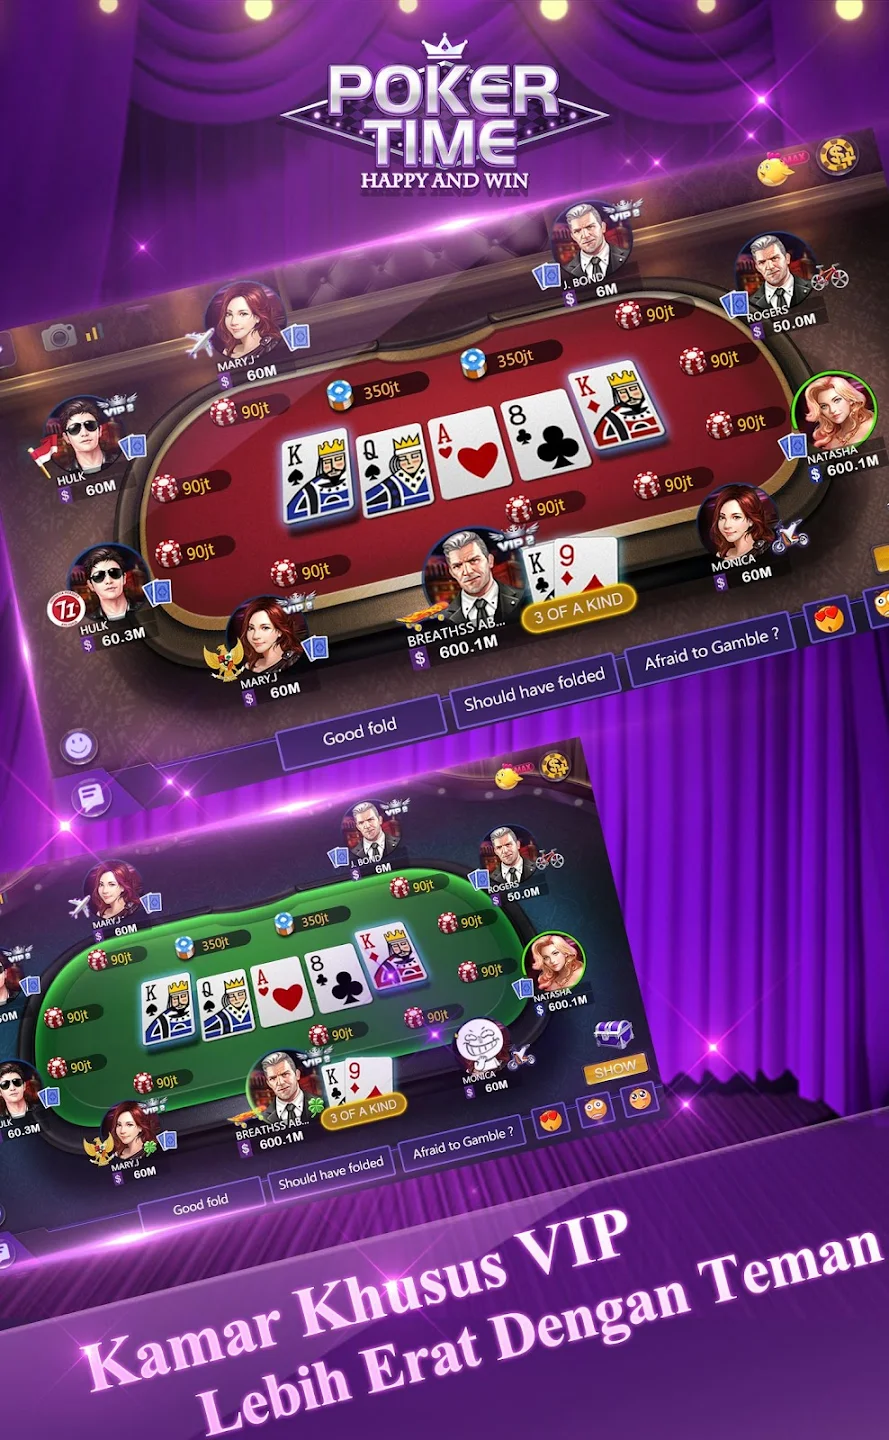 Poker Time app